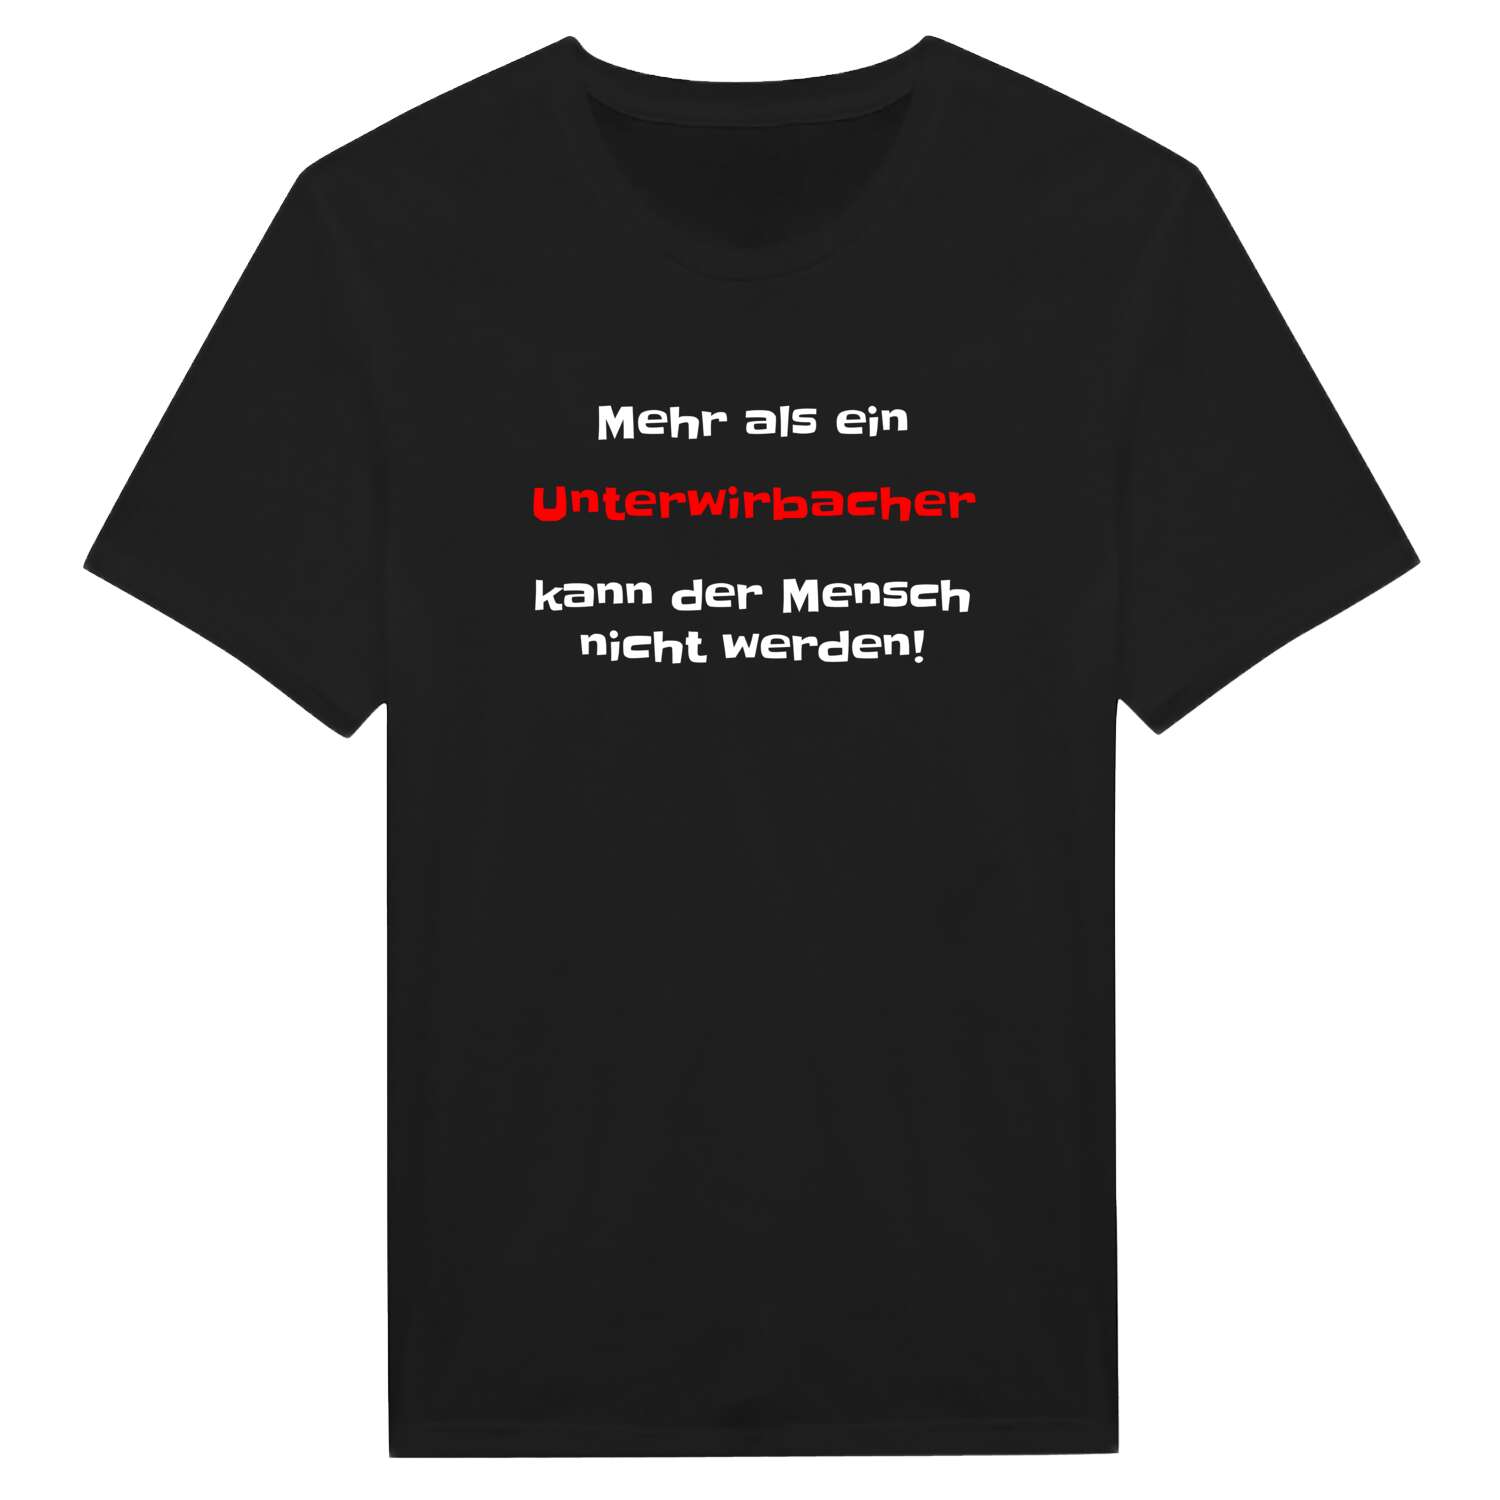 Unterwirbach T-Shirt »Mehr als ein«